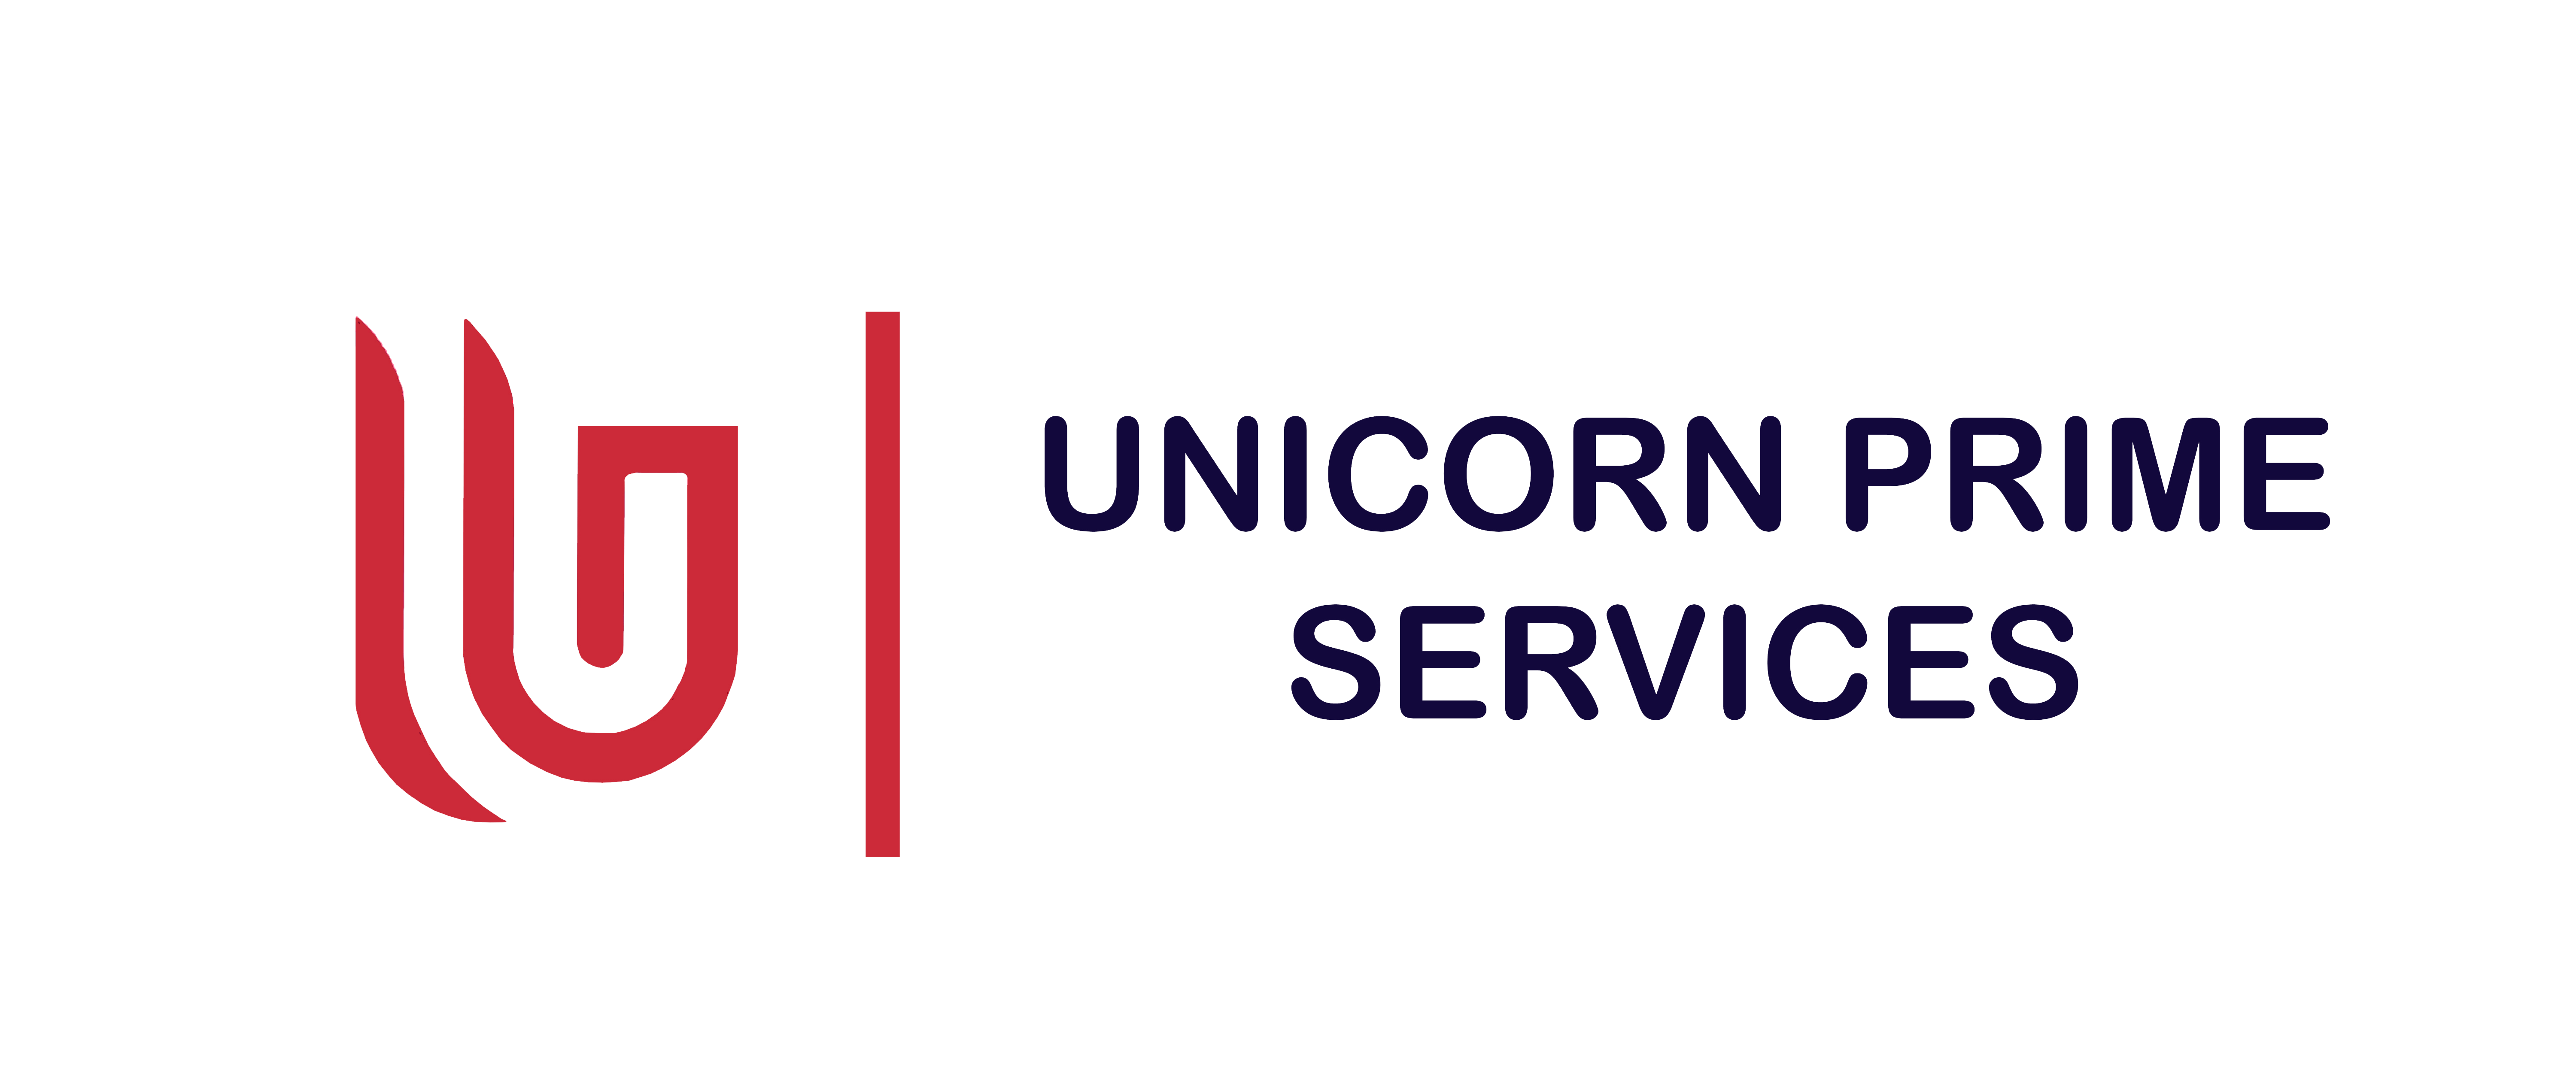 Unicorn Prime Services